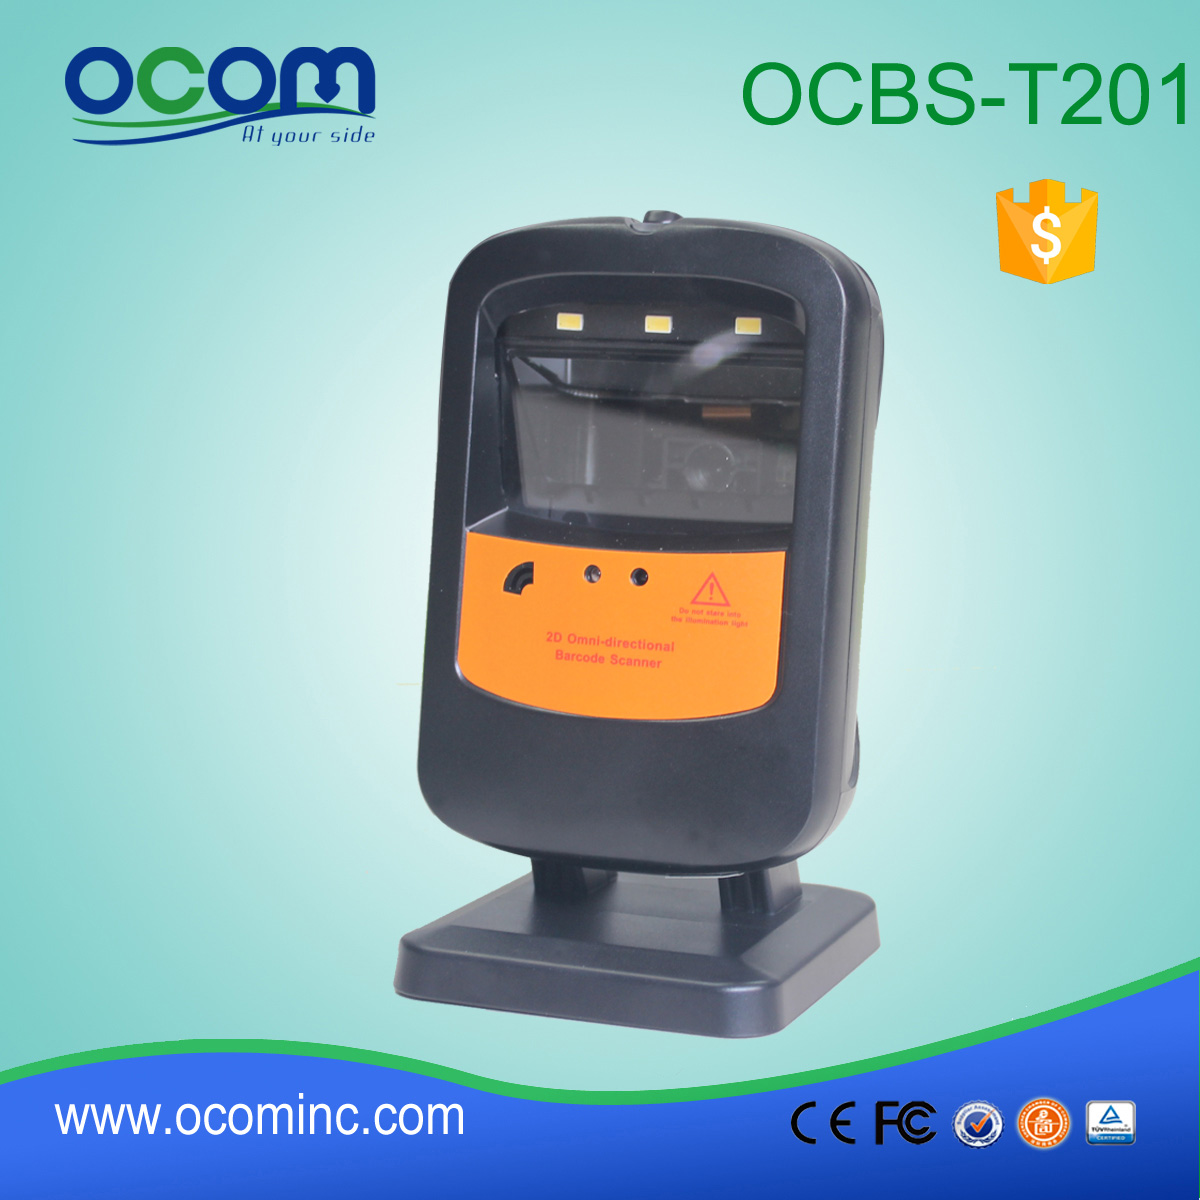 2015 nieuwste 2D Omni-directionaI Image Barcode Scanner OCBS-T201